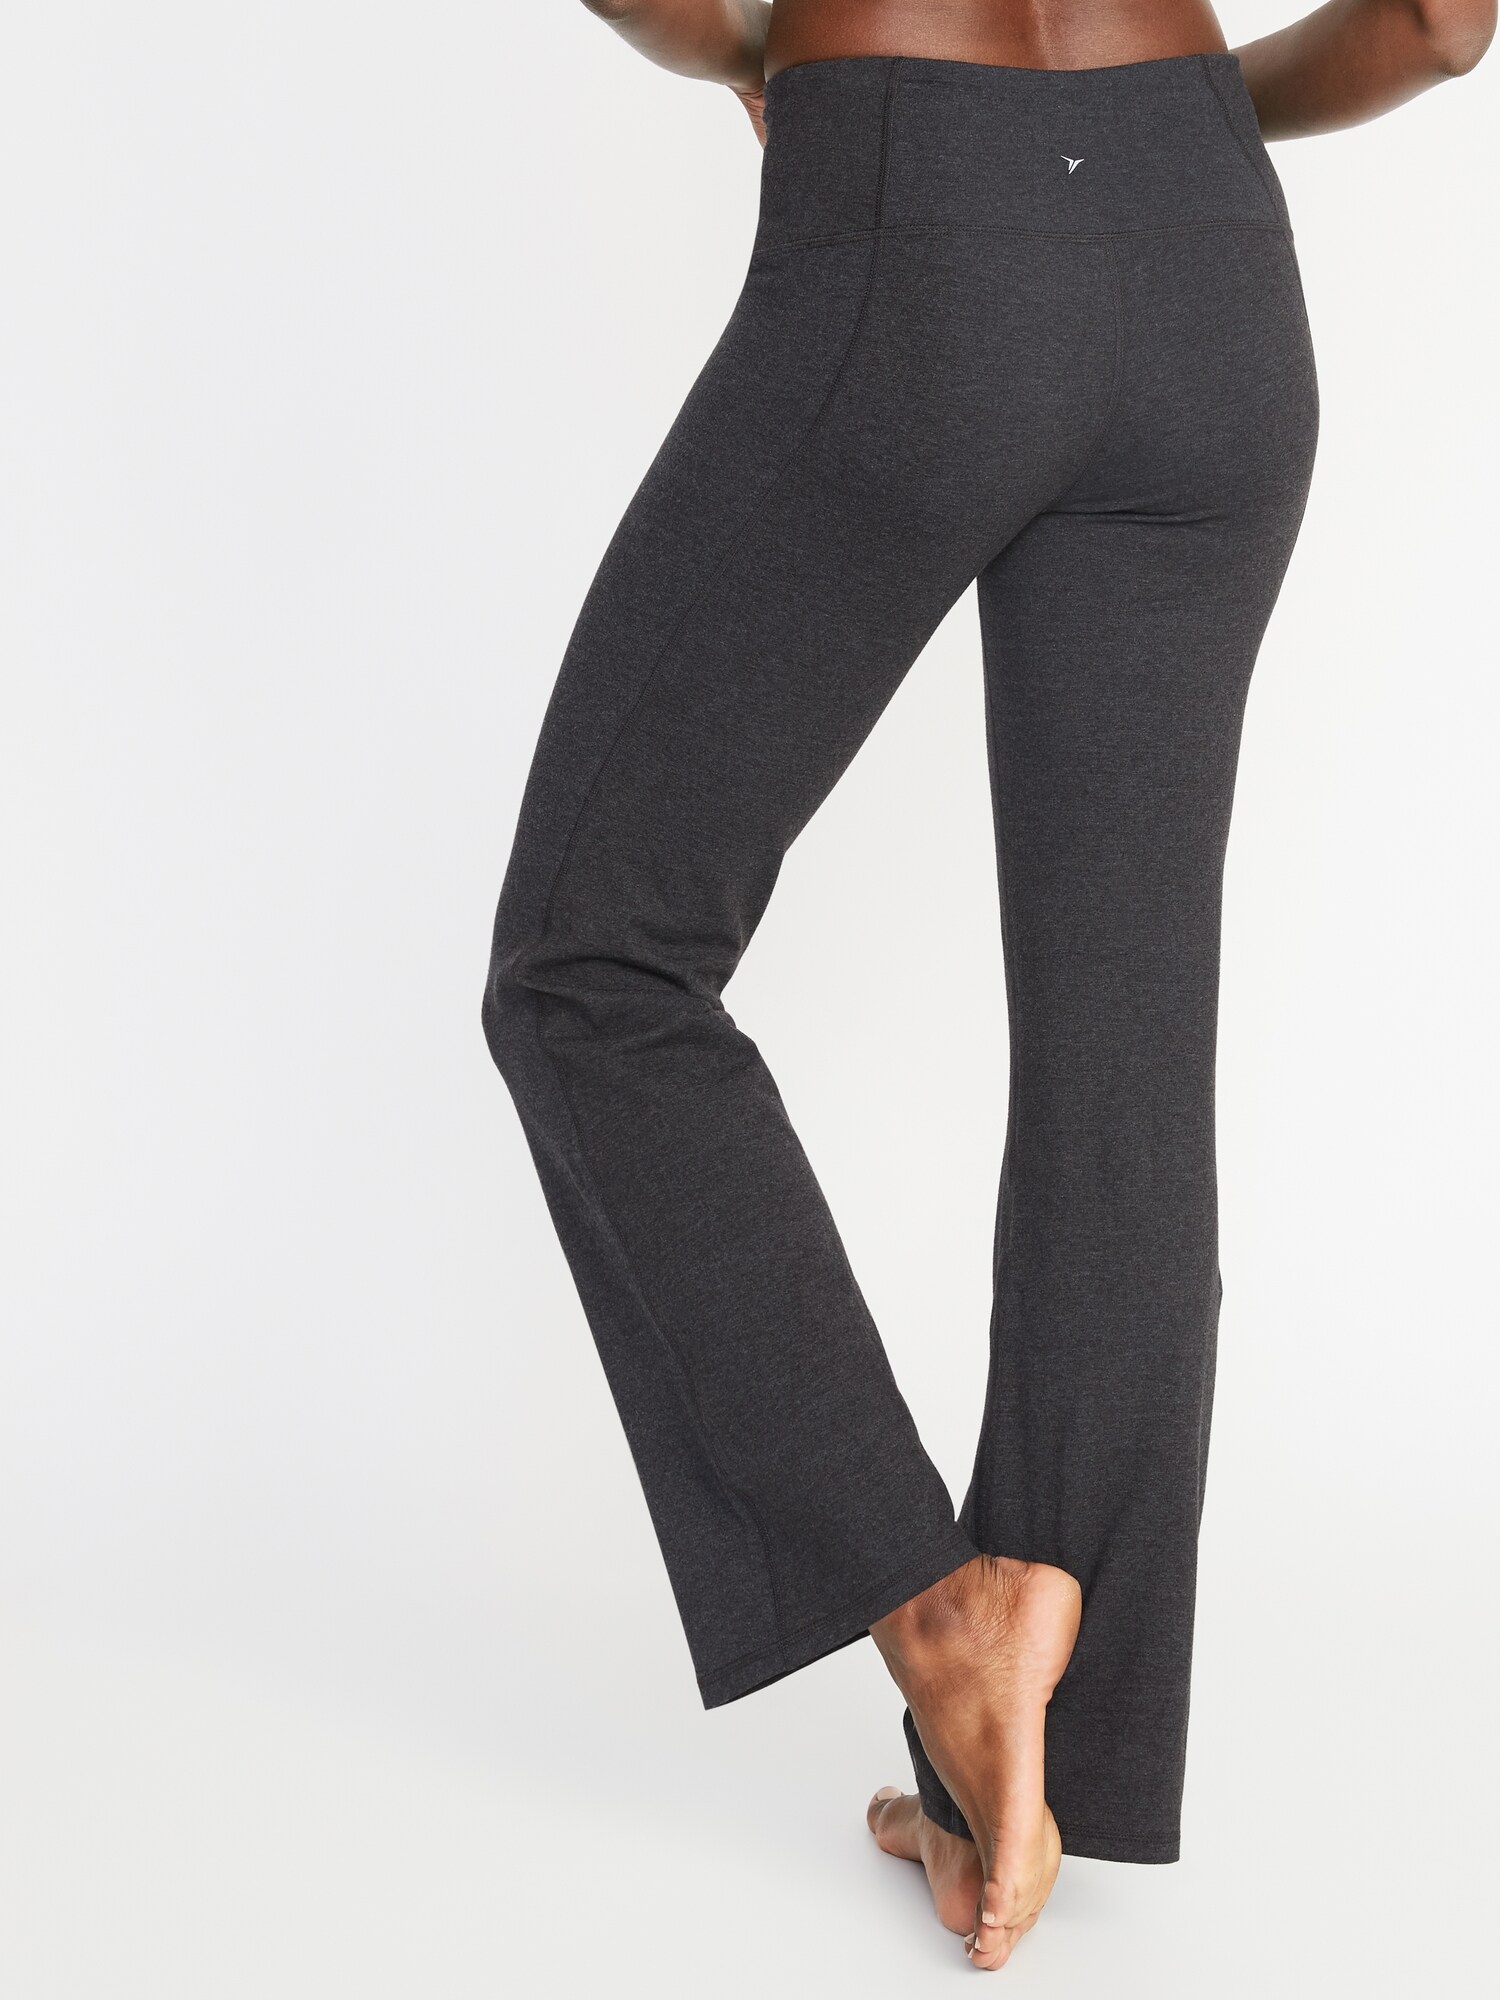 SEVEGO Pantalones de Yoga Bootcut para Mujer con 4 Bolsillos 74cm//78cm//84cm//90cm Entrepierna Peque/ño//Regular//Alto Pantal/ón Lounge Workout